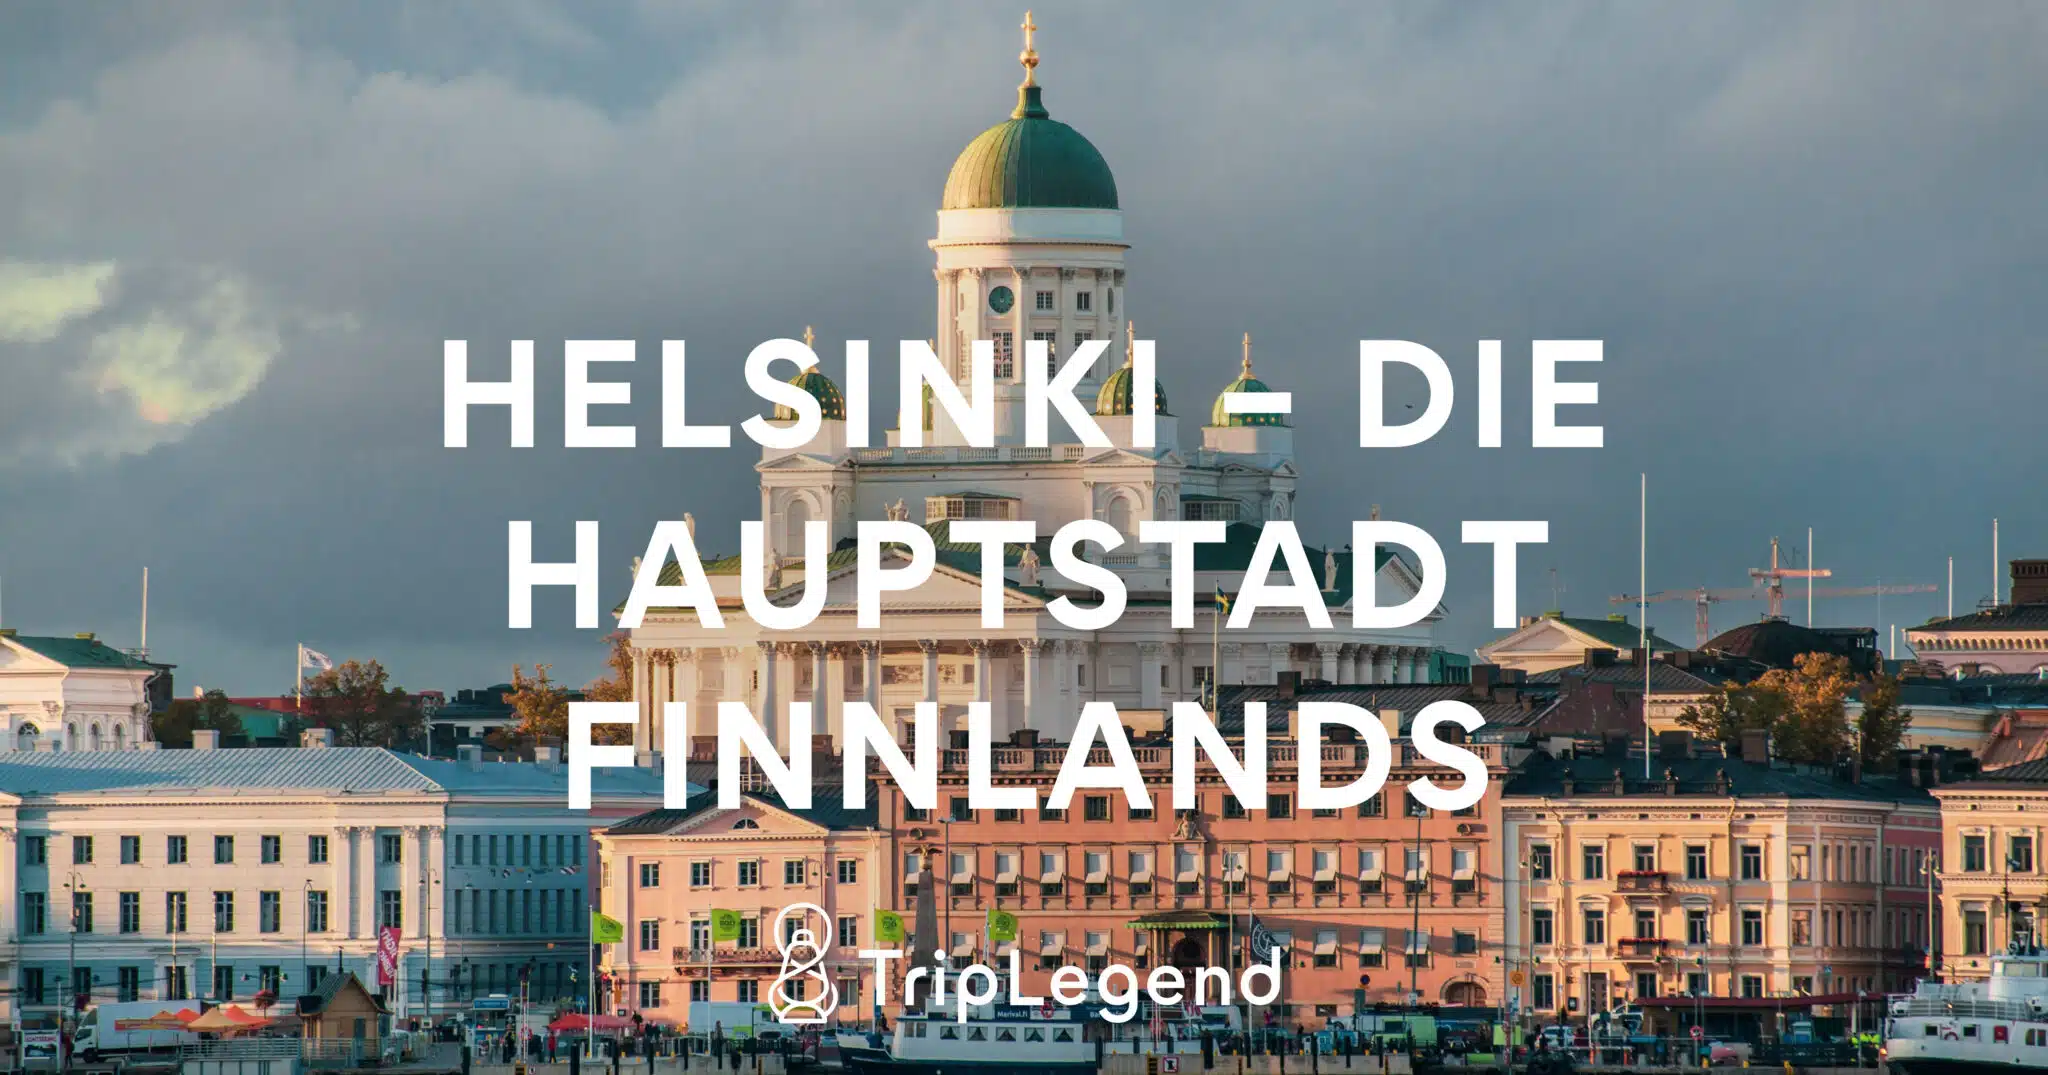 Helsinki - De hoofdstad van Finland1 Geschaald.jpg